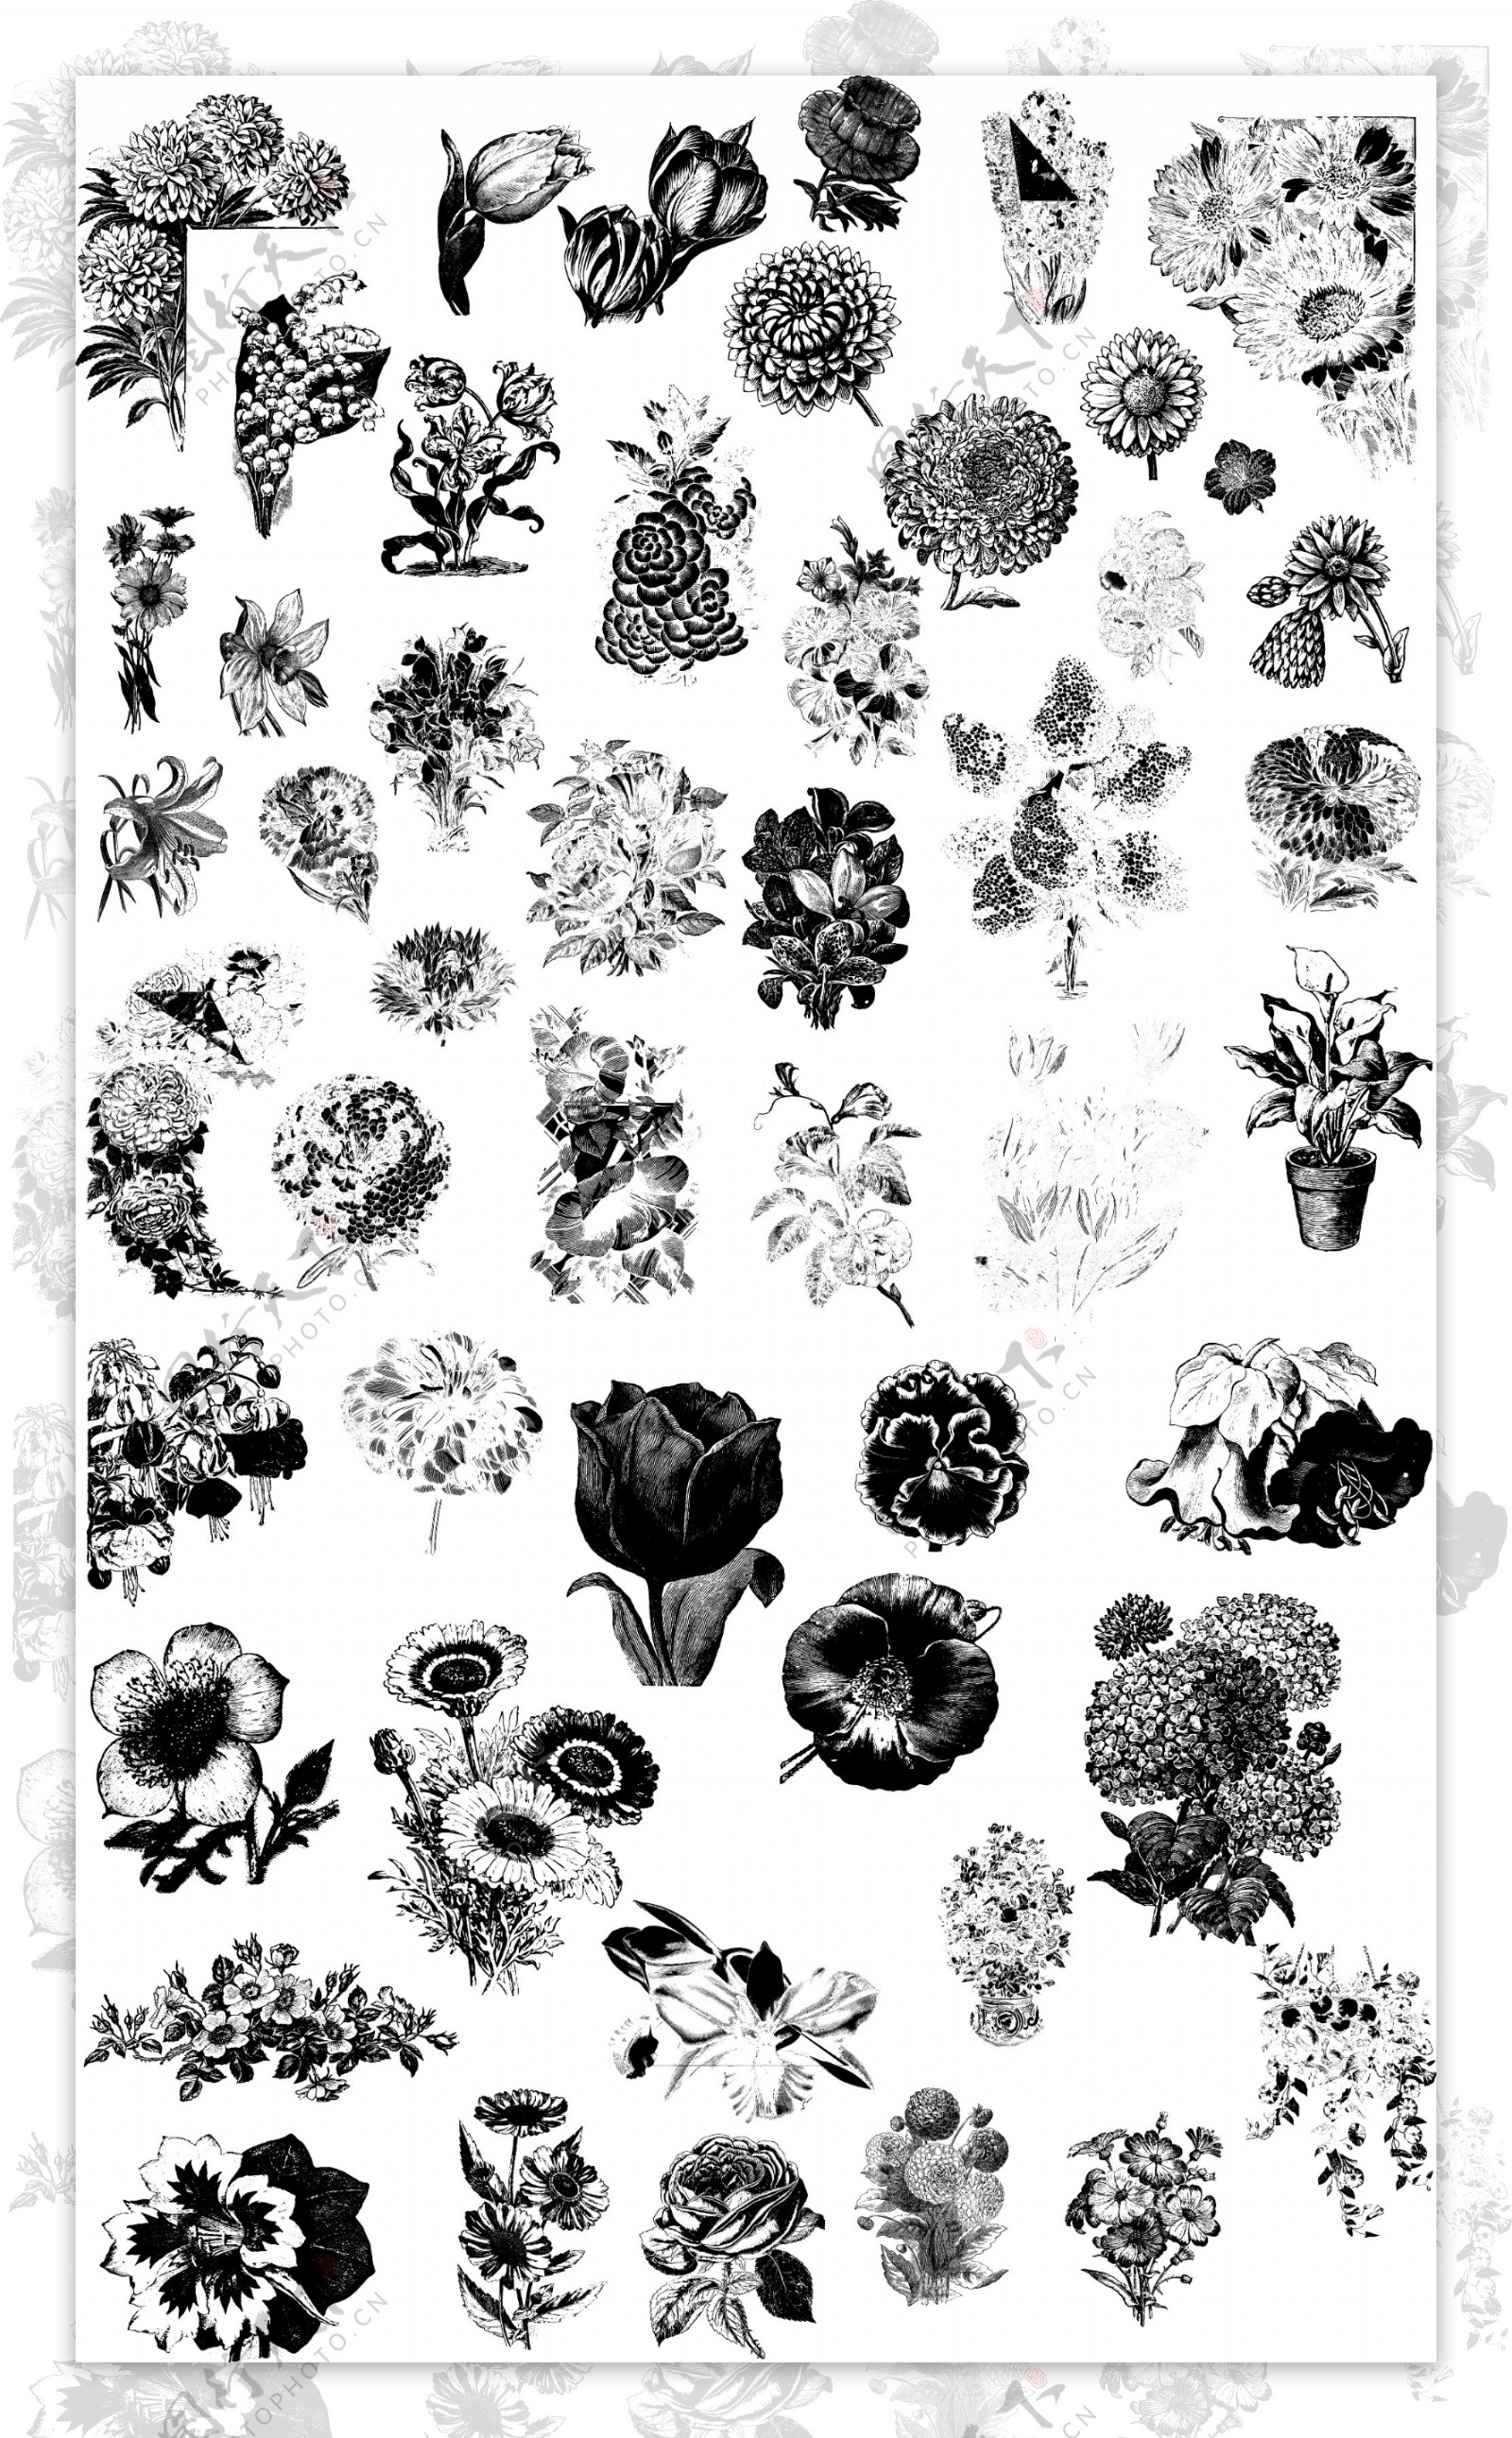 黑白手绘各种花朵插画